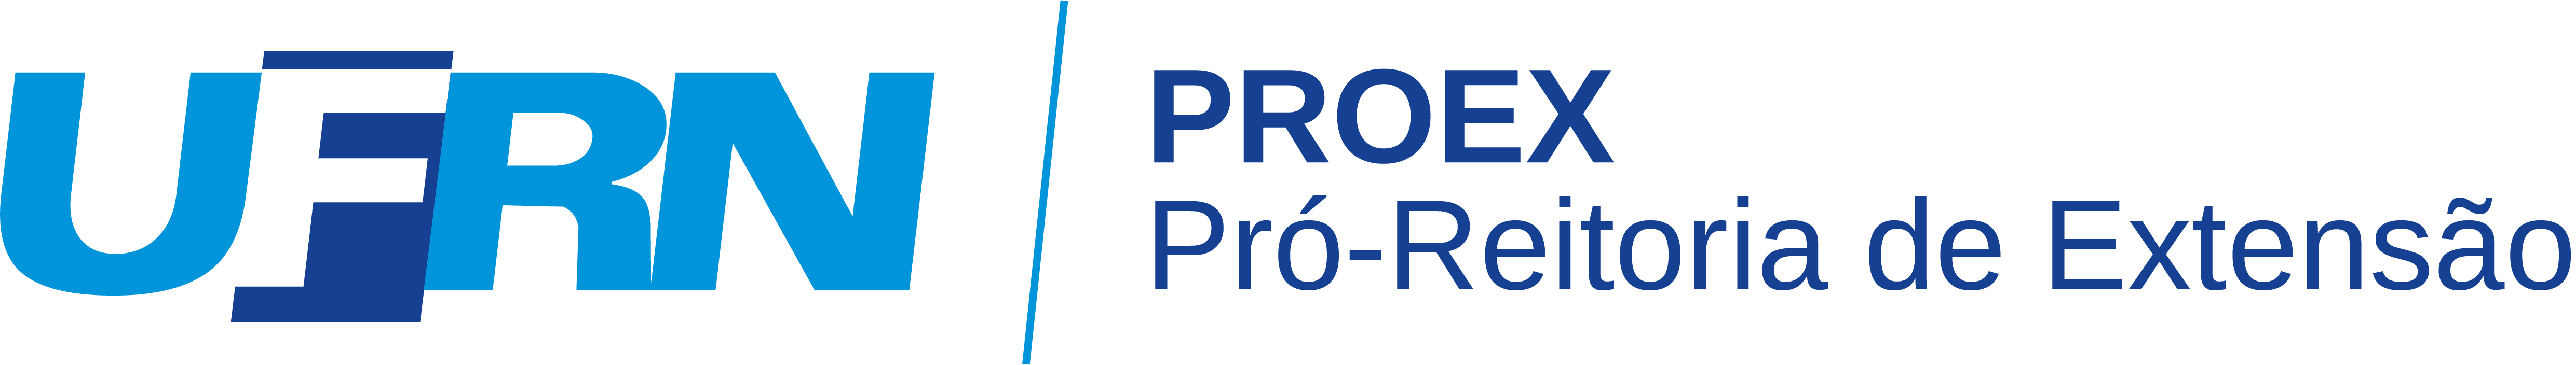 Logotipo: PROEX - Pró-Reitoria de Extensão